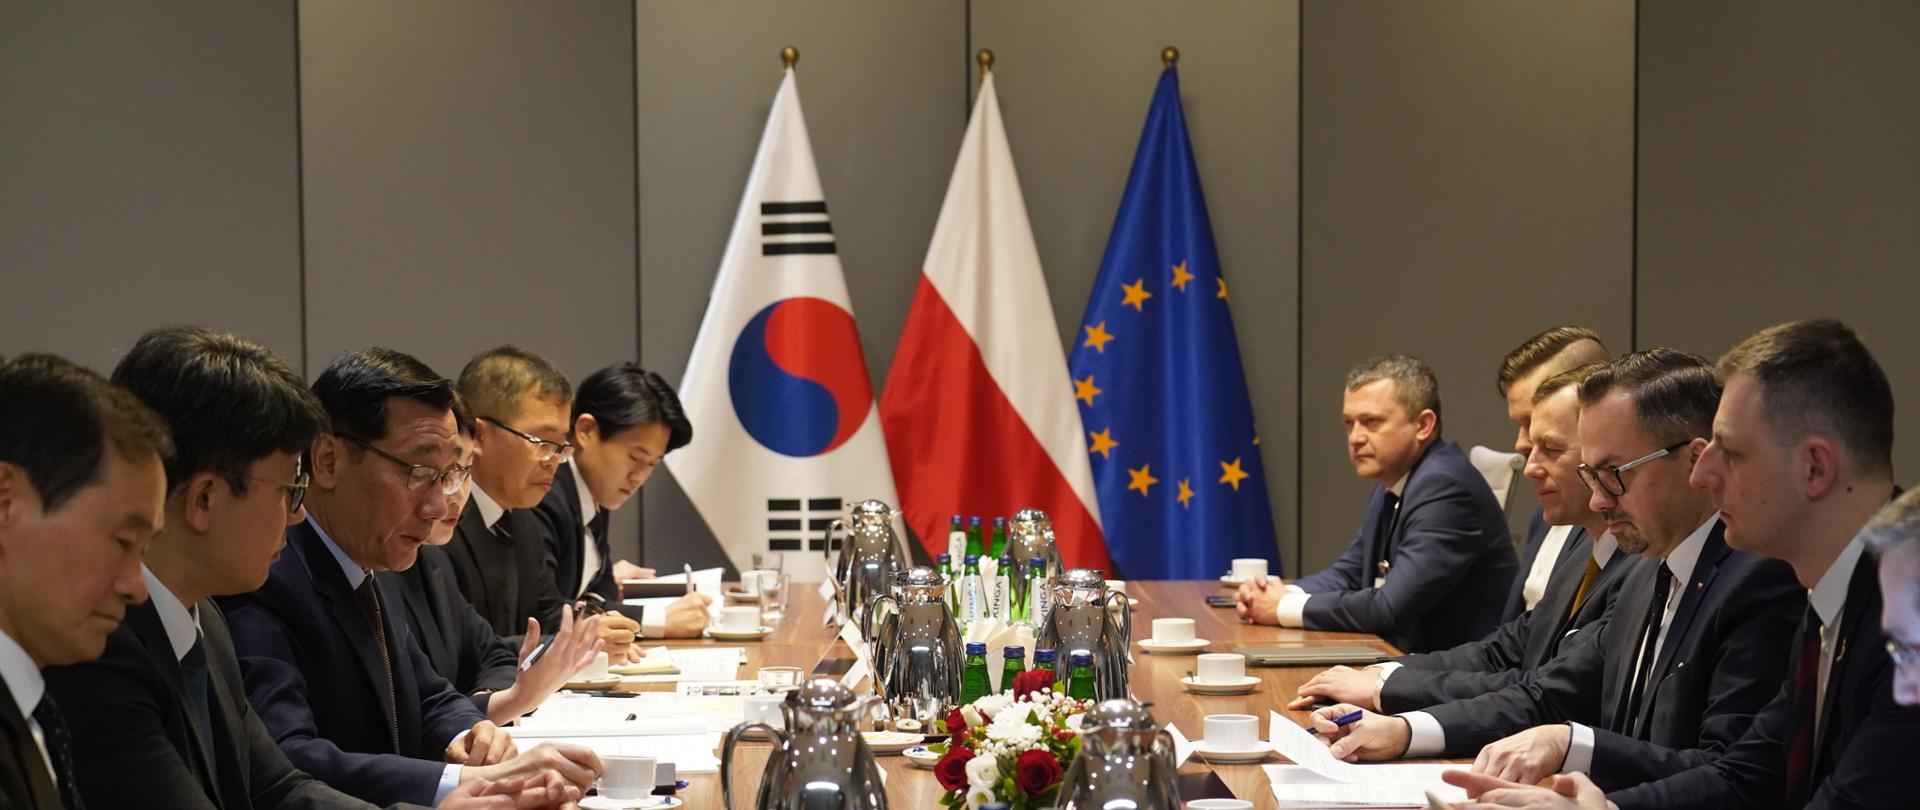 Grupa osób siedzi po obu stronach długiego stołu. Z tyłu stoją flagi Korei Południowej, Polski i Unii Europejskiej.